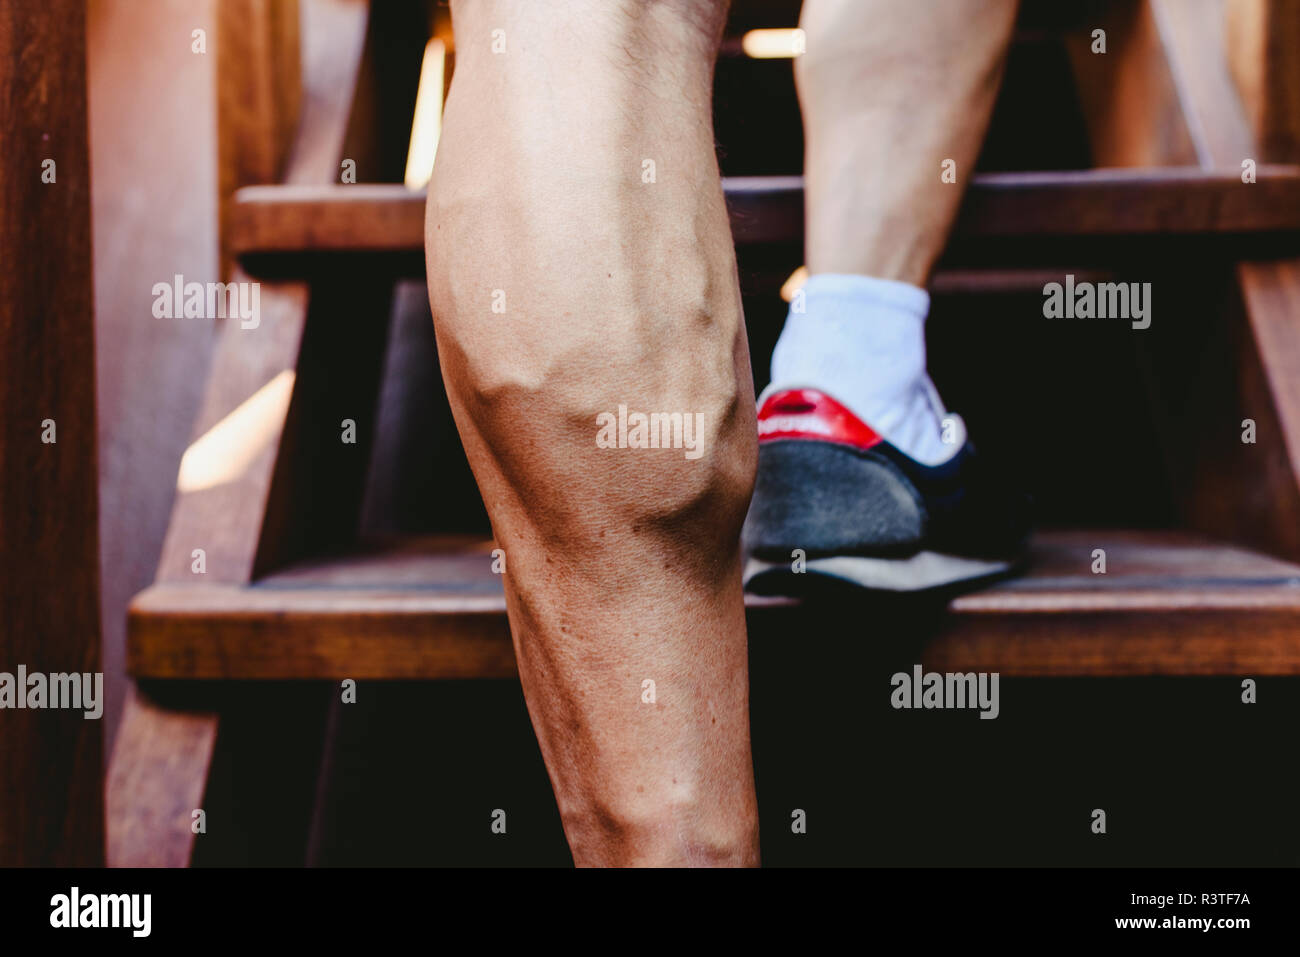 Grandi vene visibili dei muscoli del polpaccio in un uomo della gamba. Foto Stock